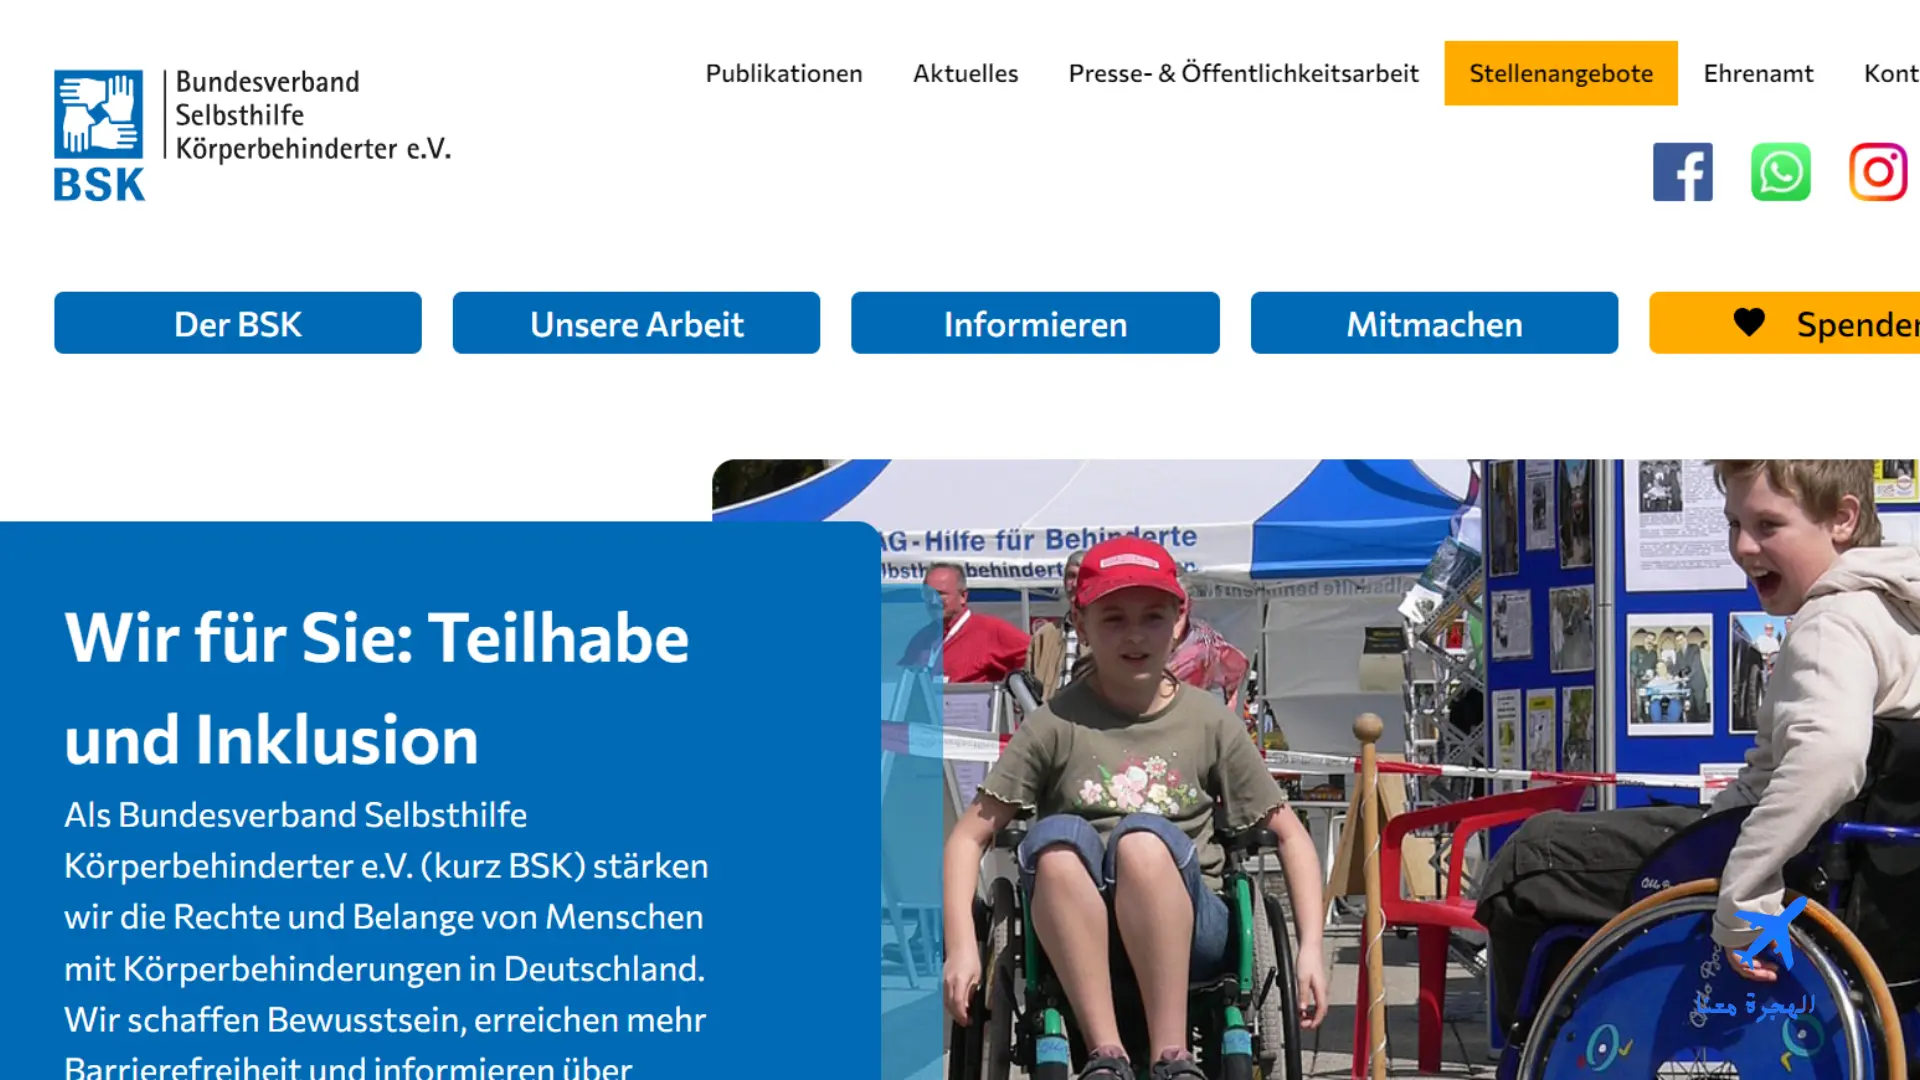 كم رواتب ذوي الاحتياجات الخاصة في ألمانيا؟